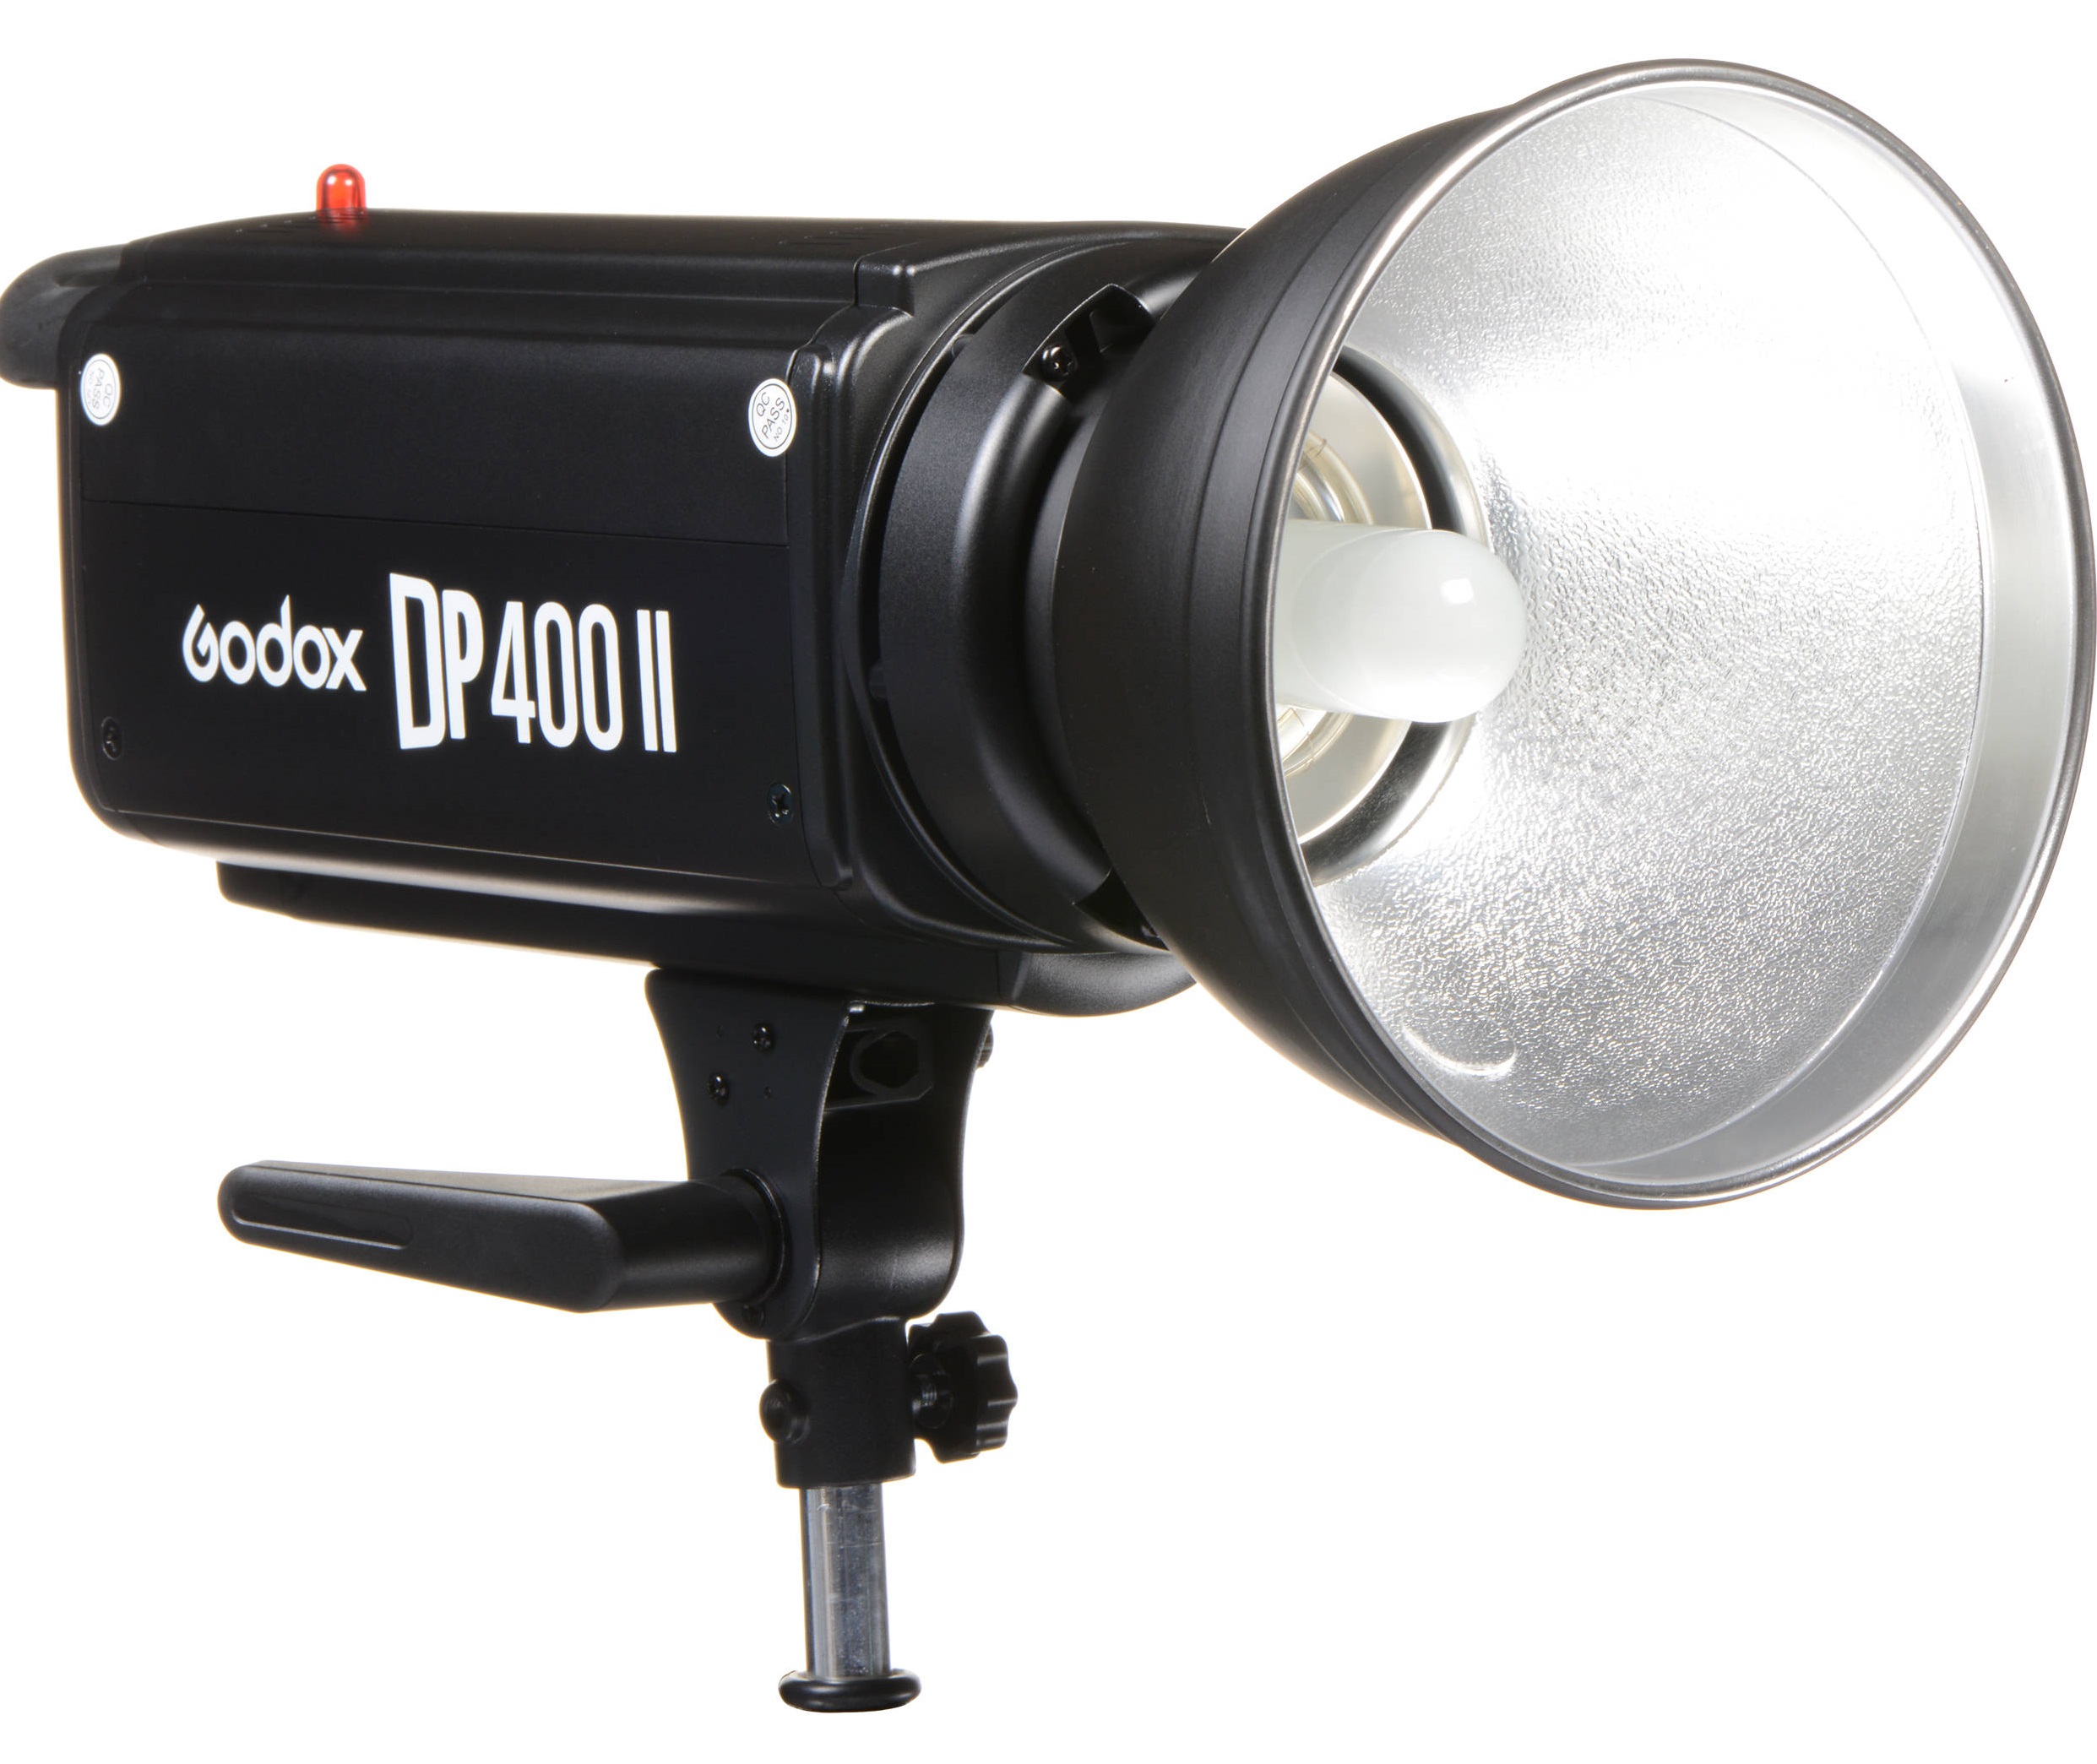 Đèn Godox DP400II có tích hợp các tính năng chuyên nghiệp và tiện lợi